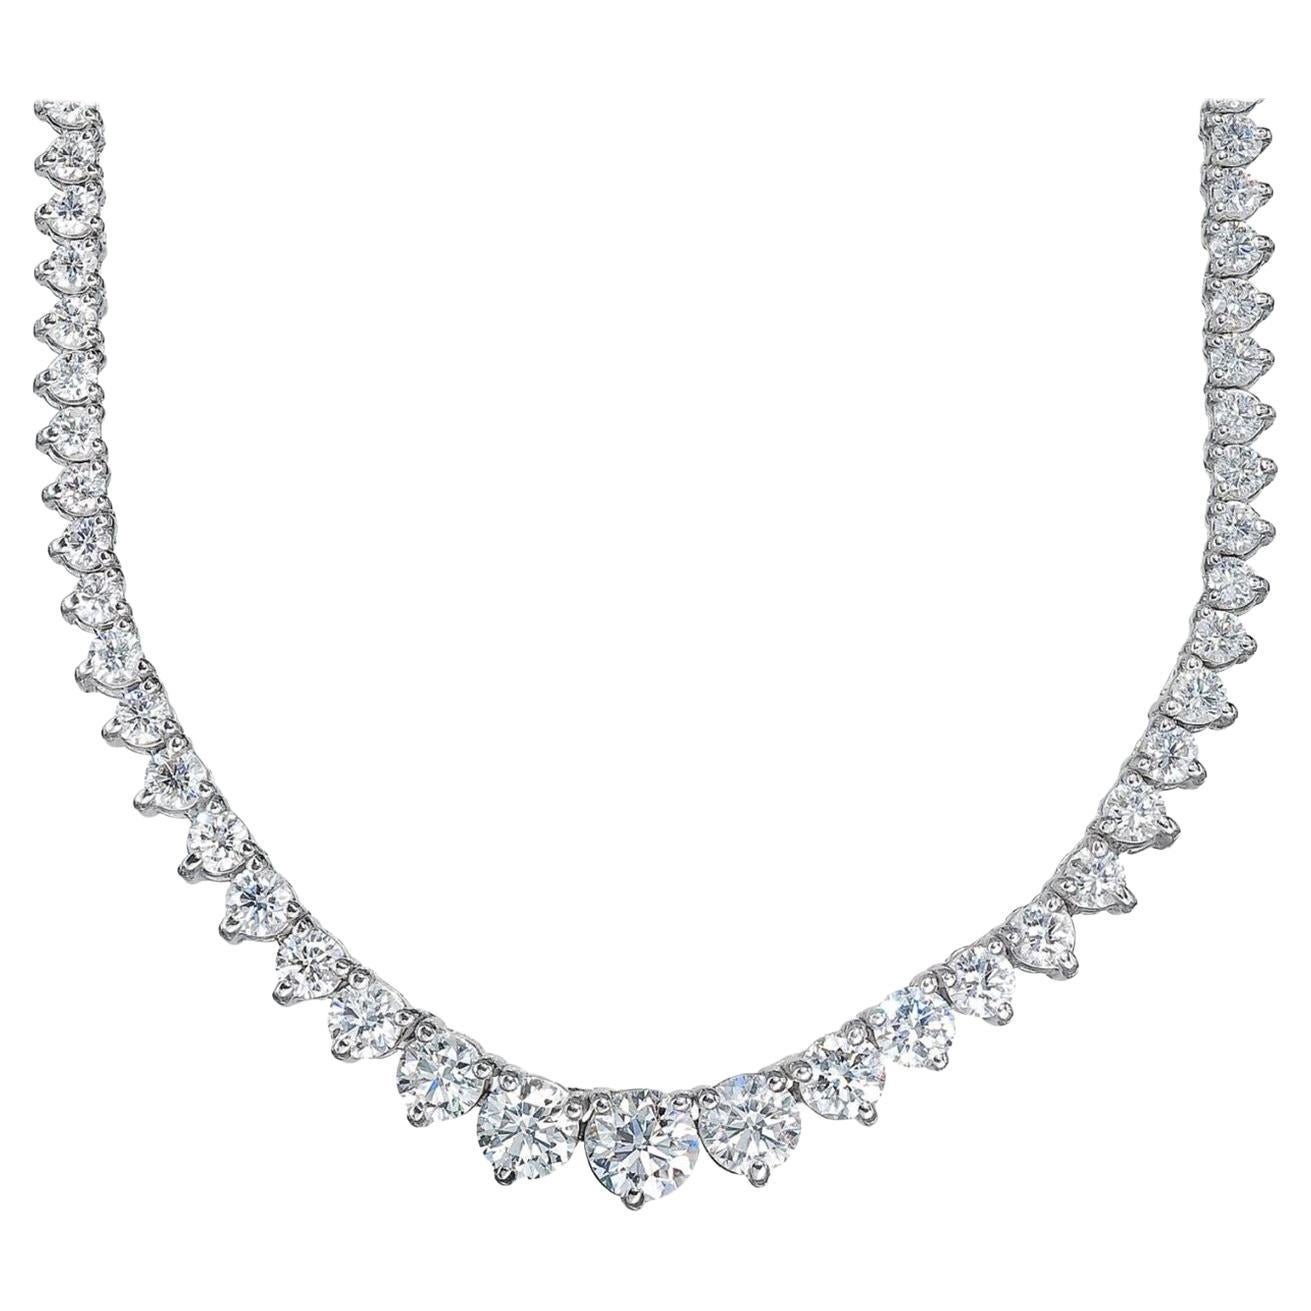 Abgestufte Tennis-Halskette mit runden Diamanten in 3 Zacken